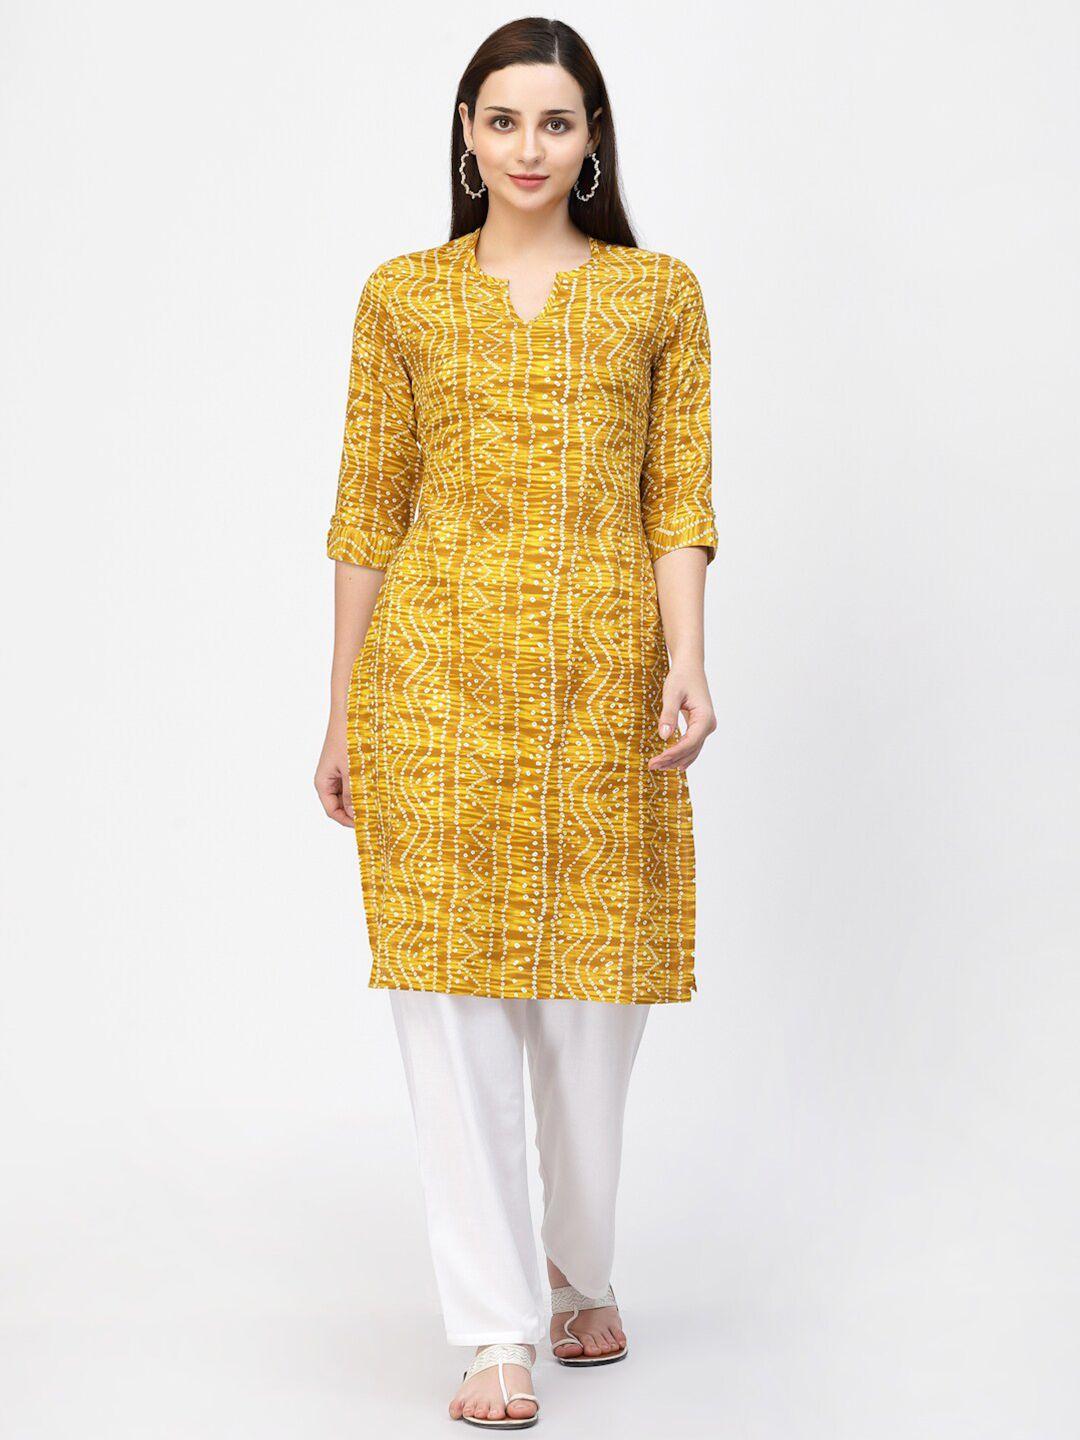 vastraa fusion women mustard yellow & white bandhani printed kurta